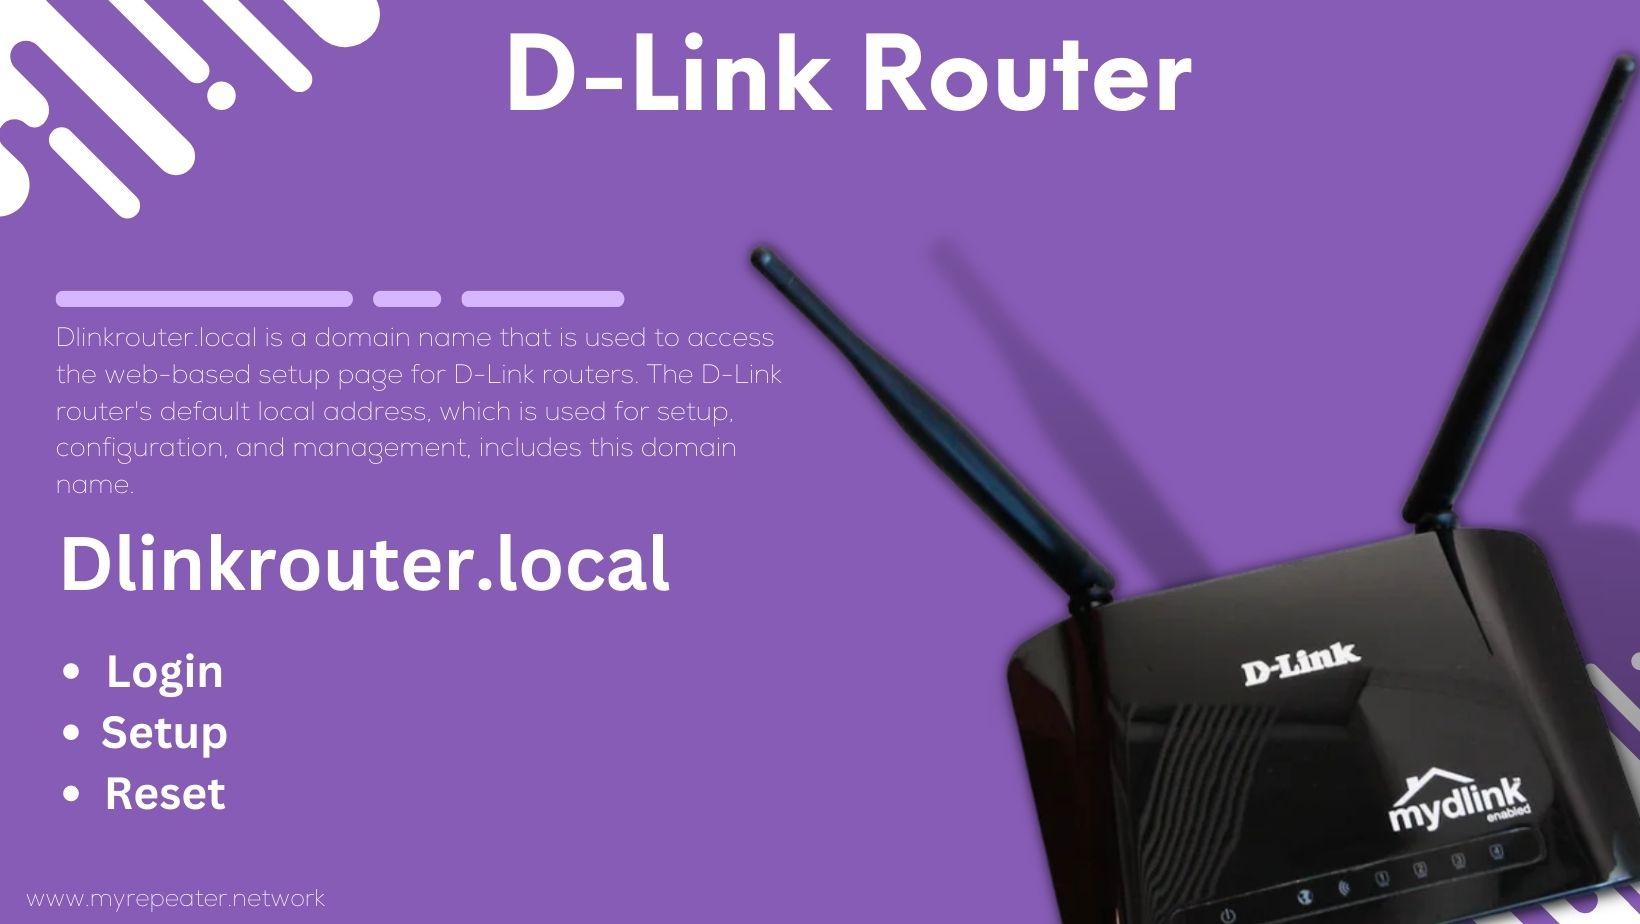 D-Link Router Login & Setup - Dlinkrouter.local